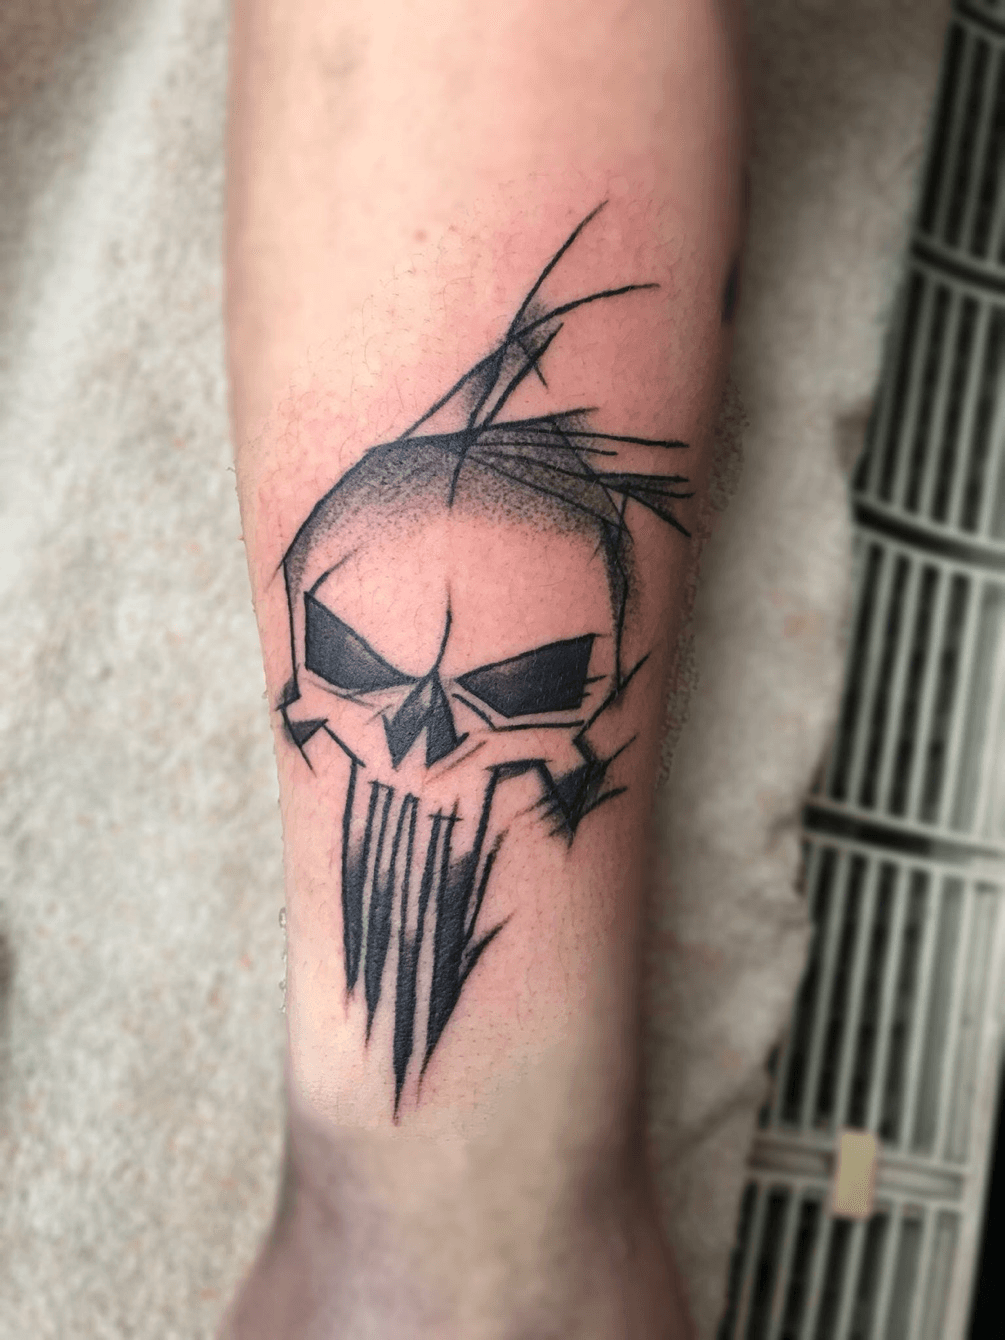 Punisher tattoo  Skull tattoo design, Tattoos, Skull tattoo